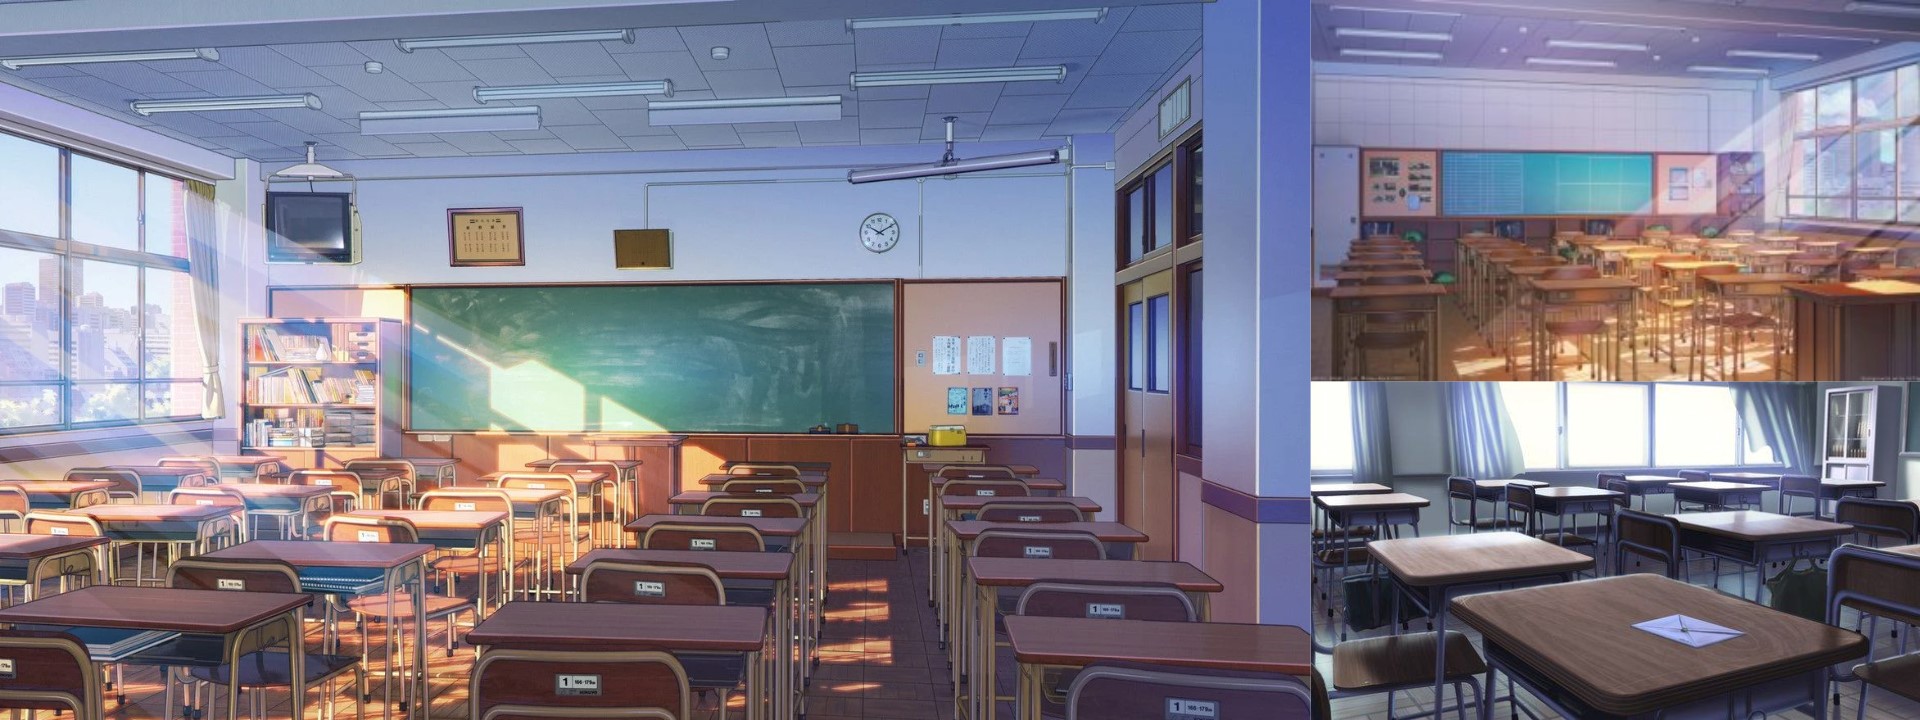 Anime Classroom - YouTube-demhanvico.com.vn